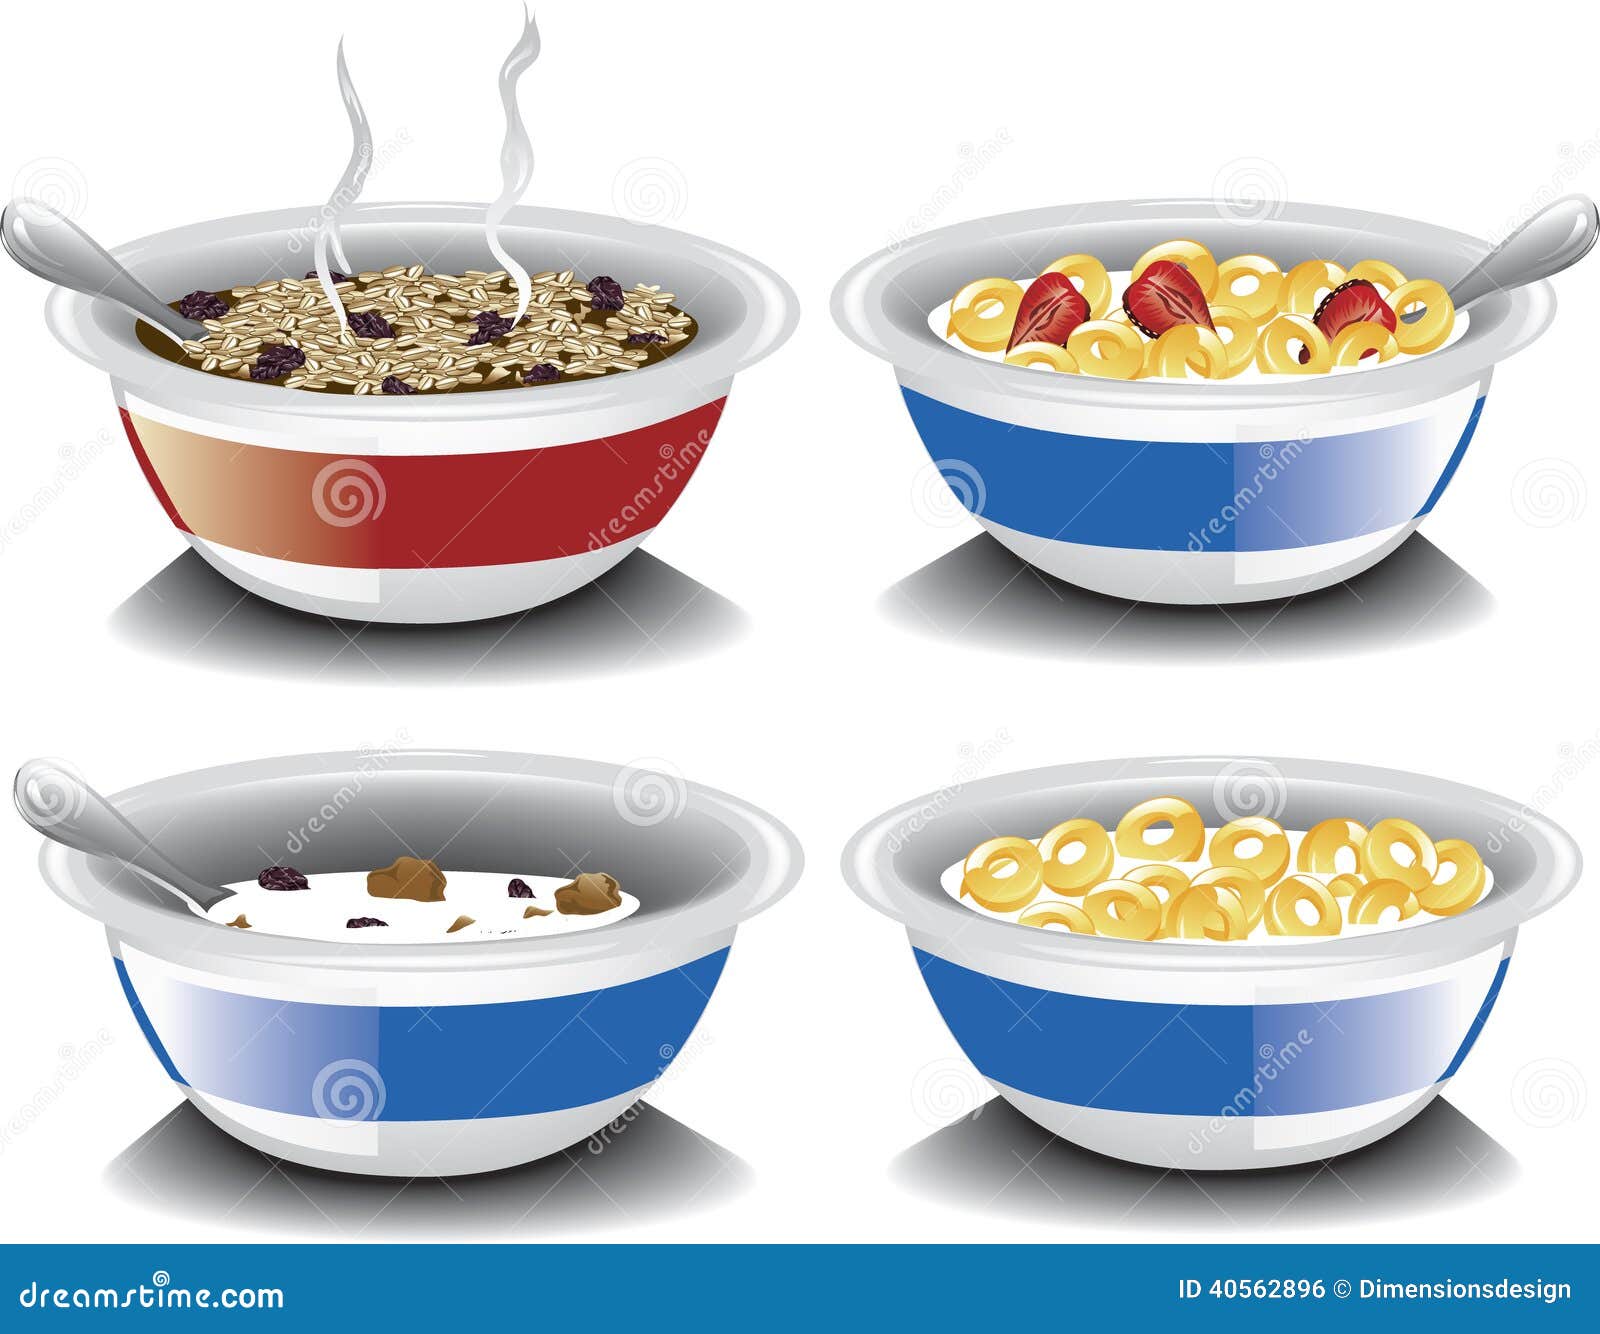 assorted breakfast cereals